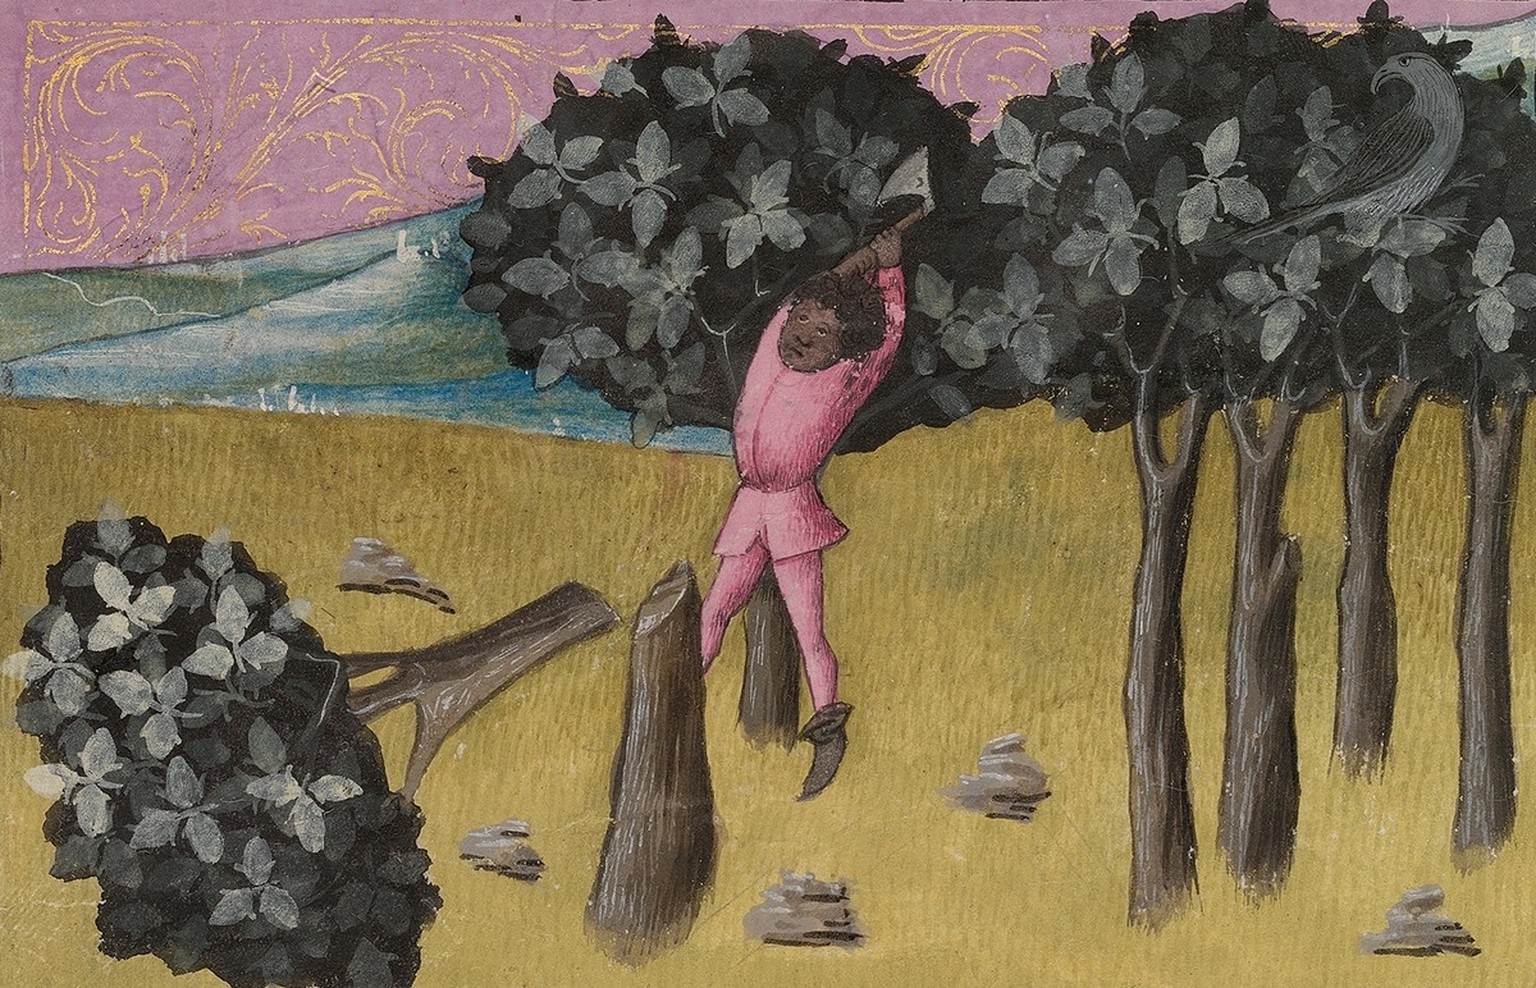 Ein Mann fällt einen Baum mit einer Axt. Illustration der Waldbewirtschaftung aus dem Codex Granatensis, um 1400.
https://digibug.ugr.es/handle/10481/6525